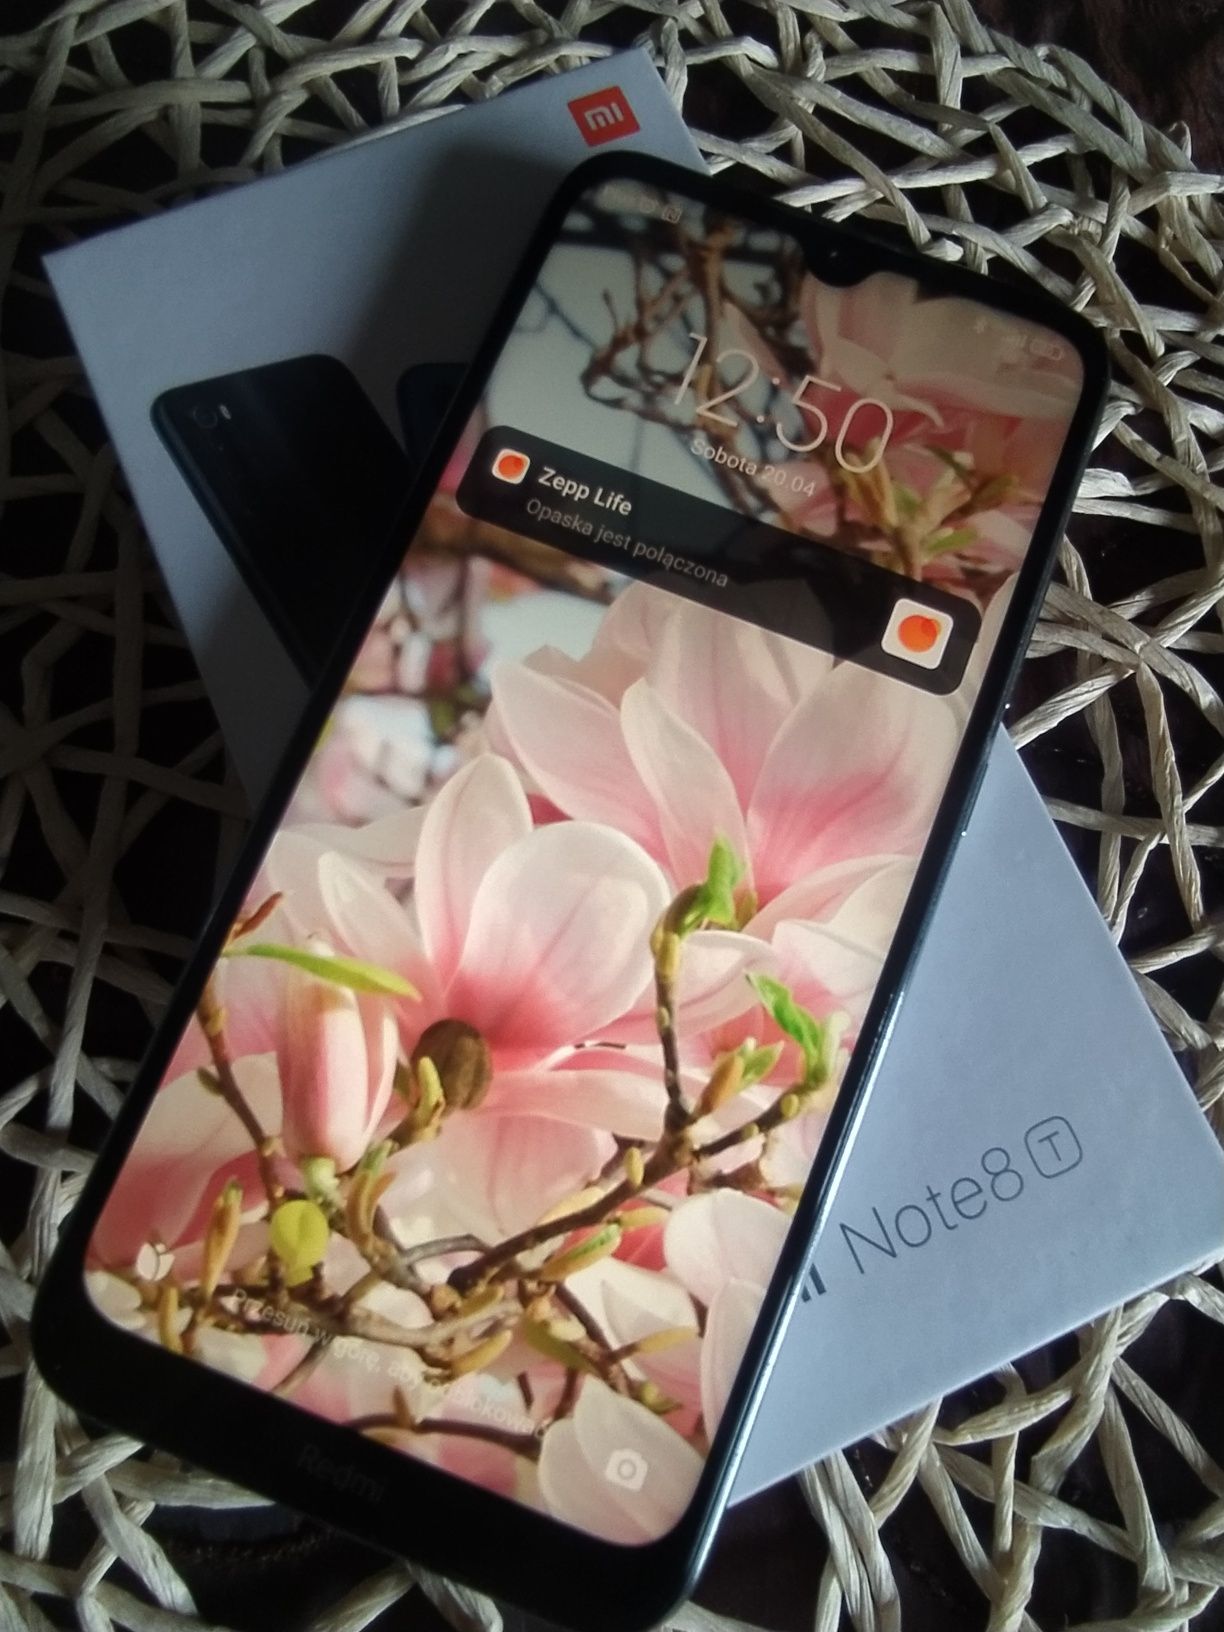 Xiaomi Redmi Note 8T 4/64GB